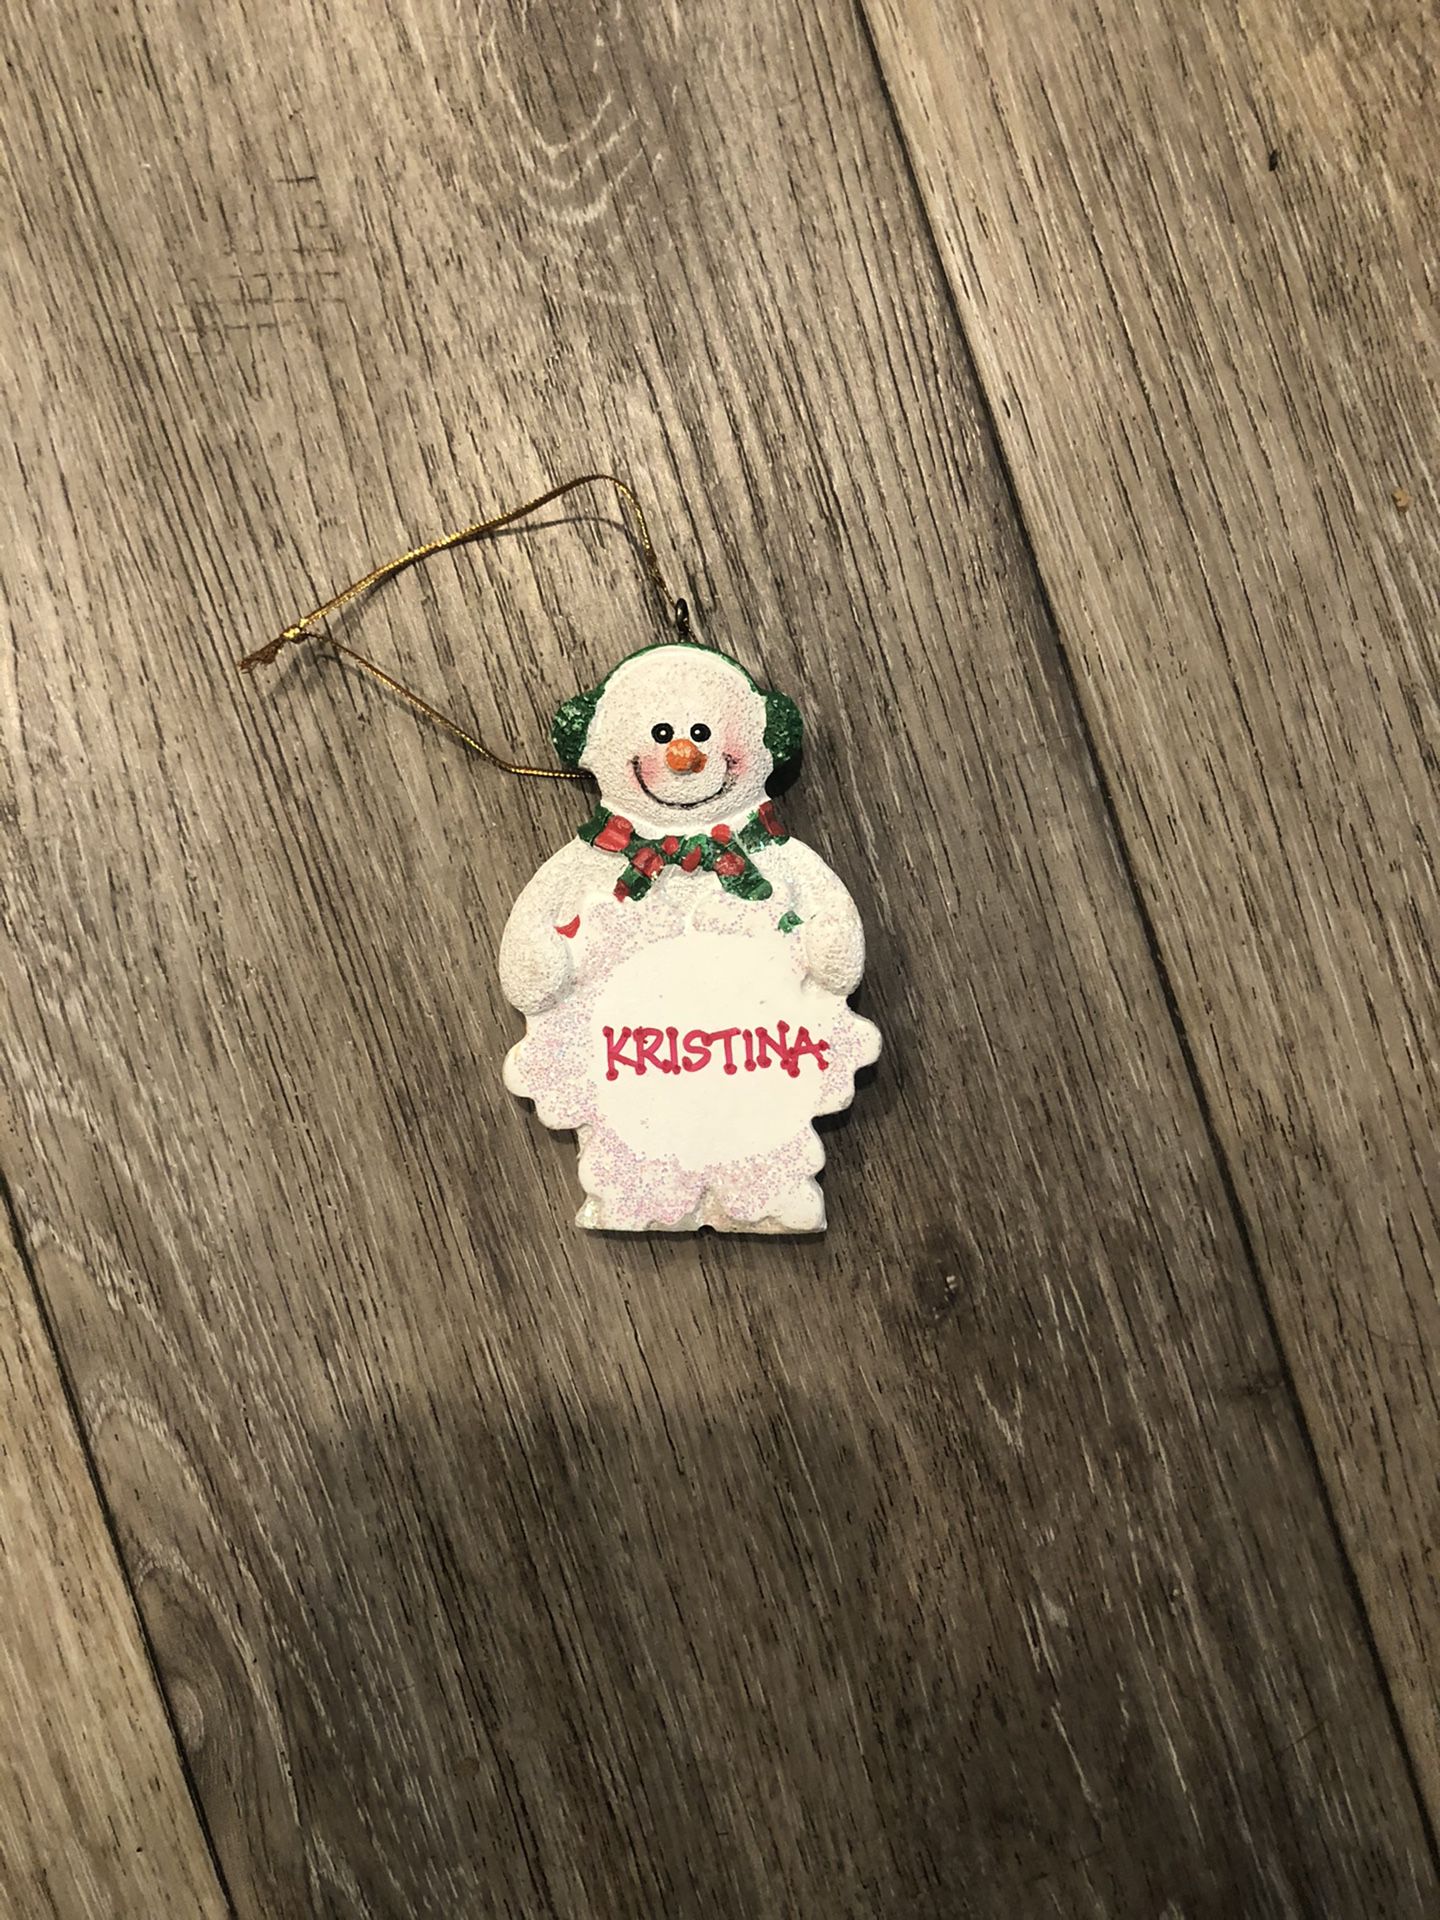 Snowman ornament “Kristina”